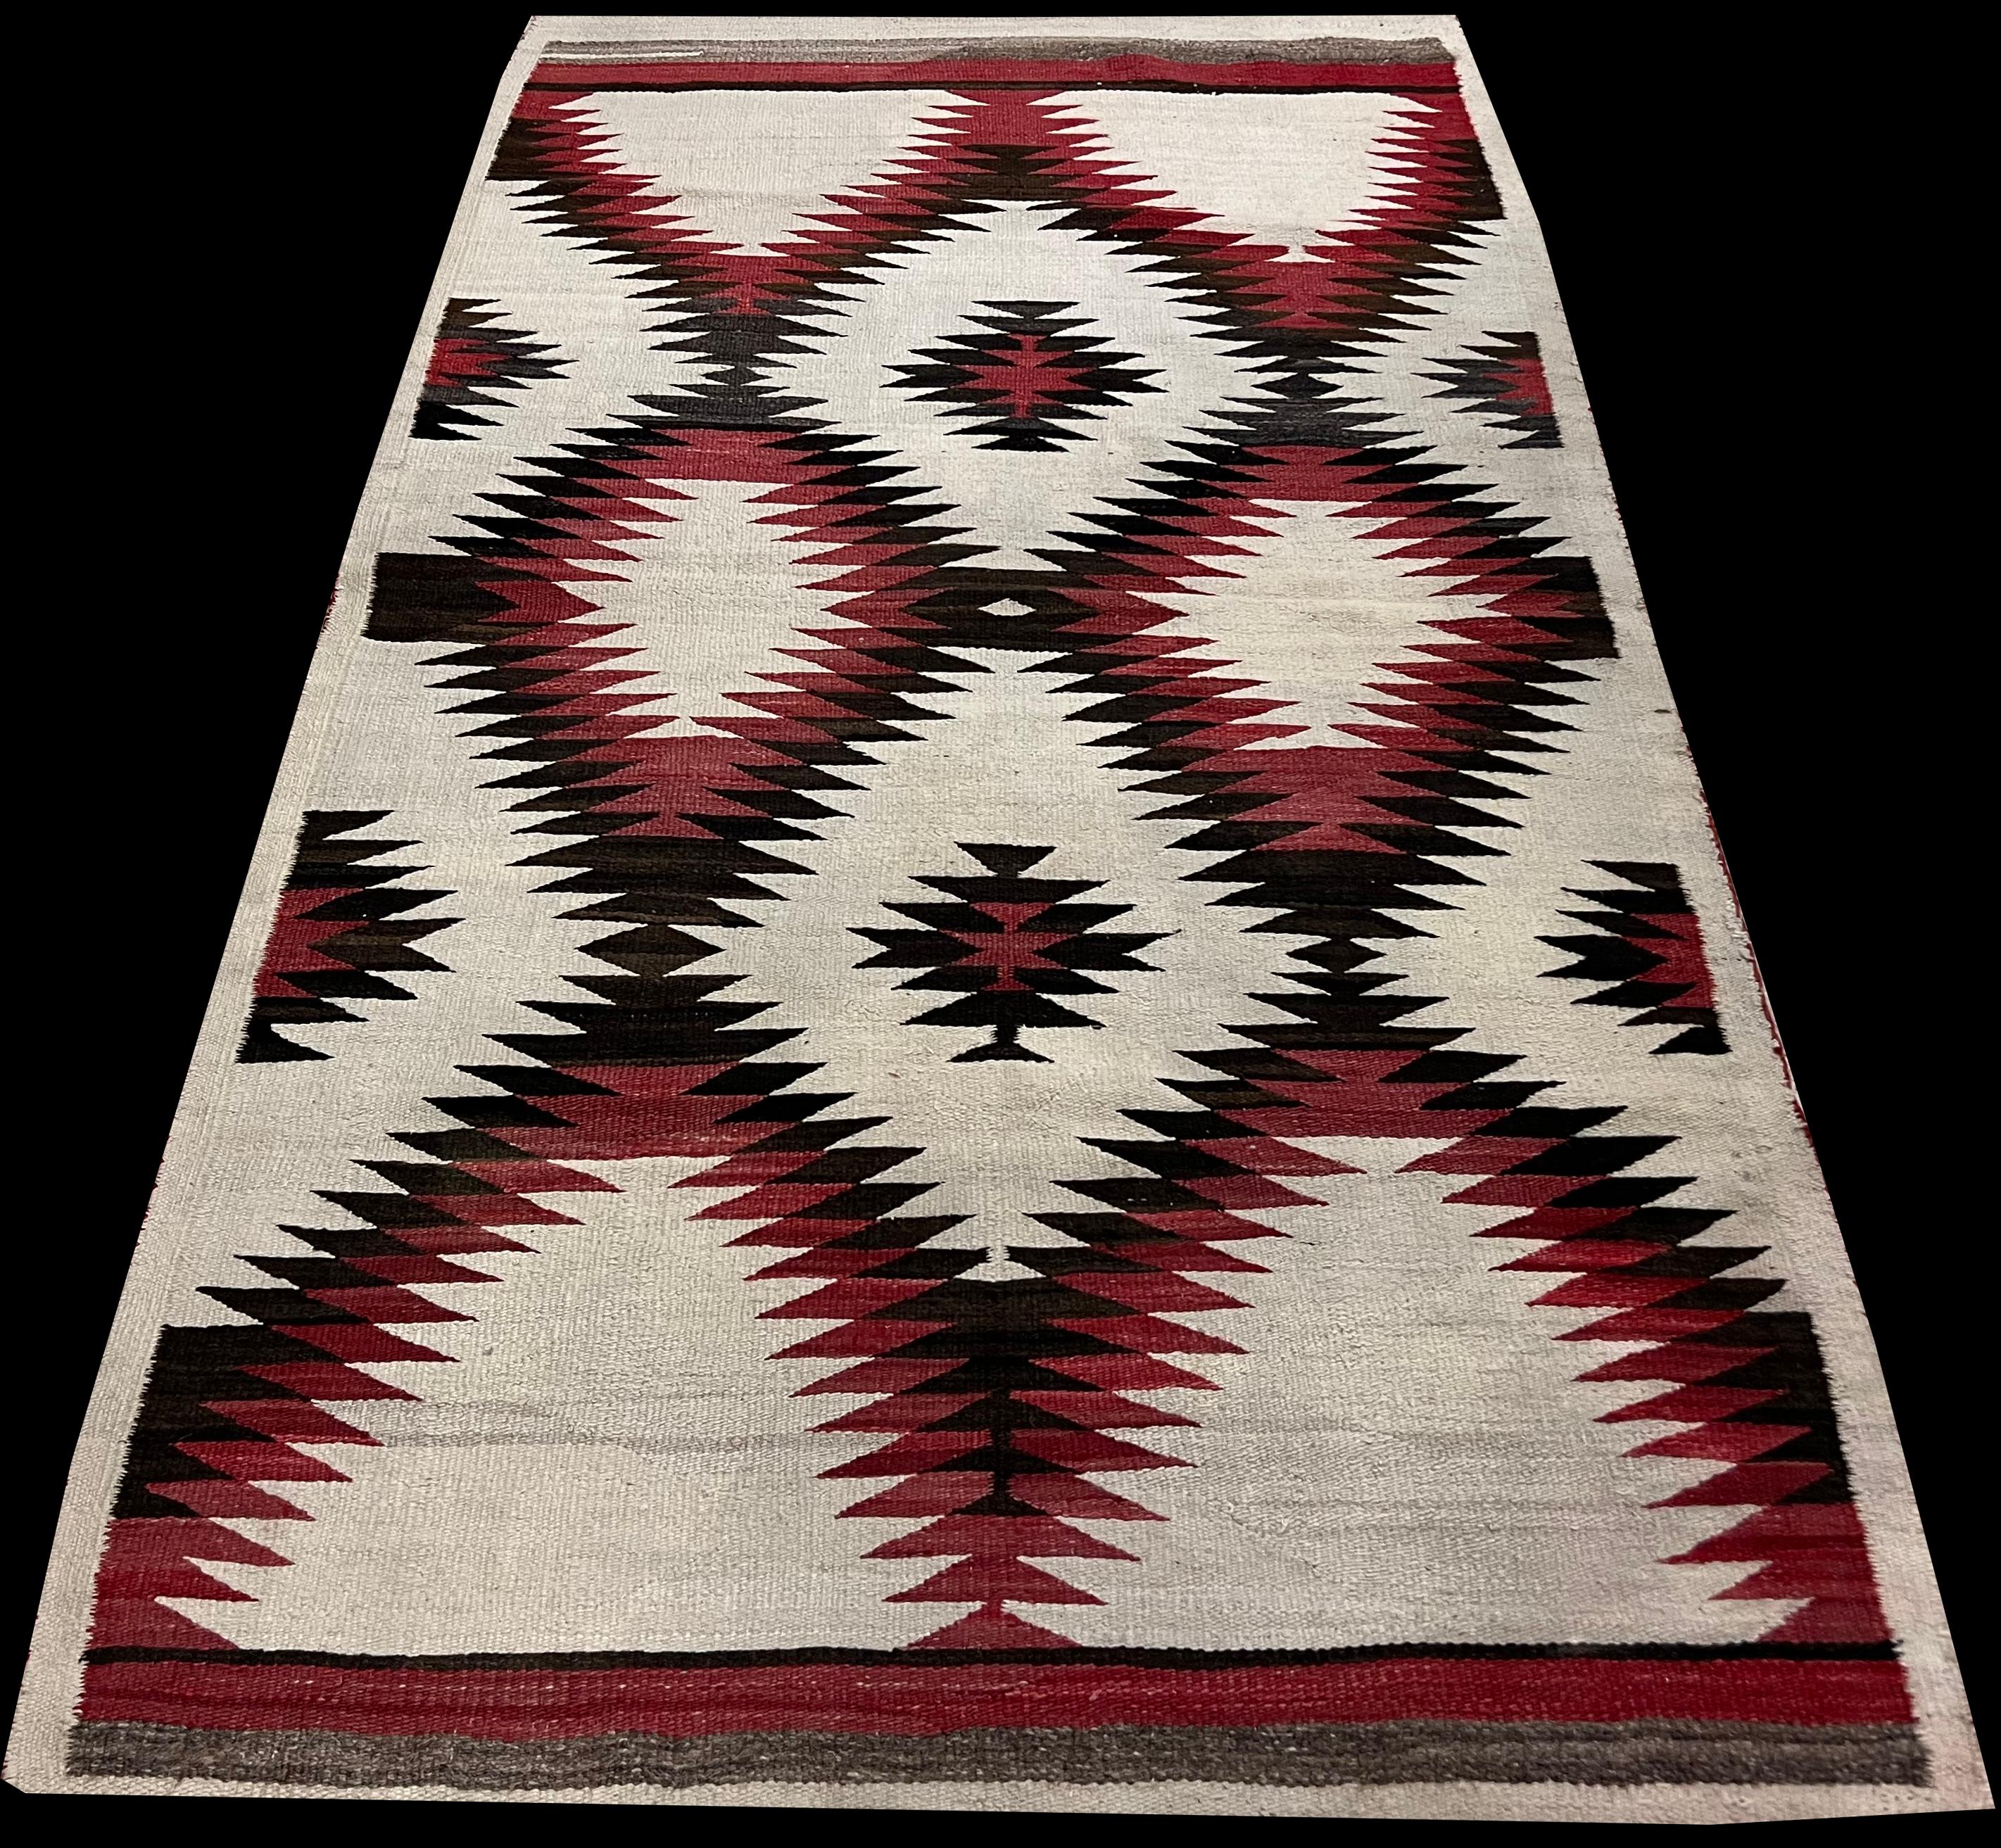 Antique Navajo Carpet, Folk Rug, Handmade Wool, Red, Black, Ivory, Brown 6